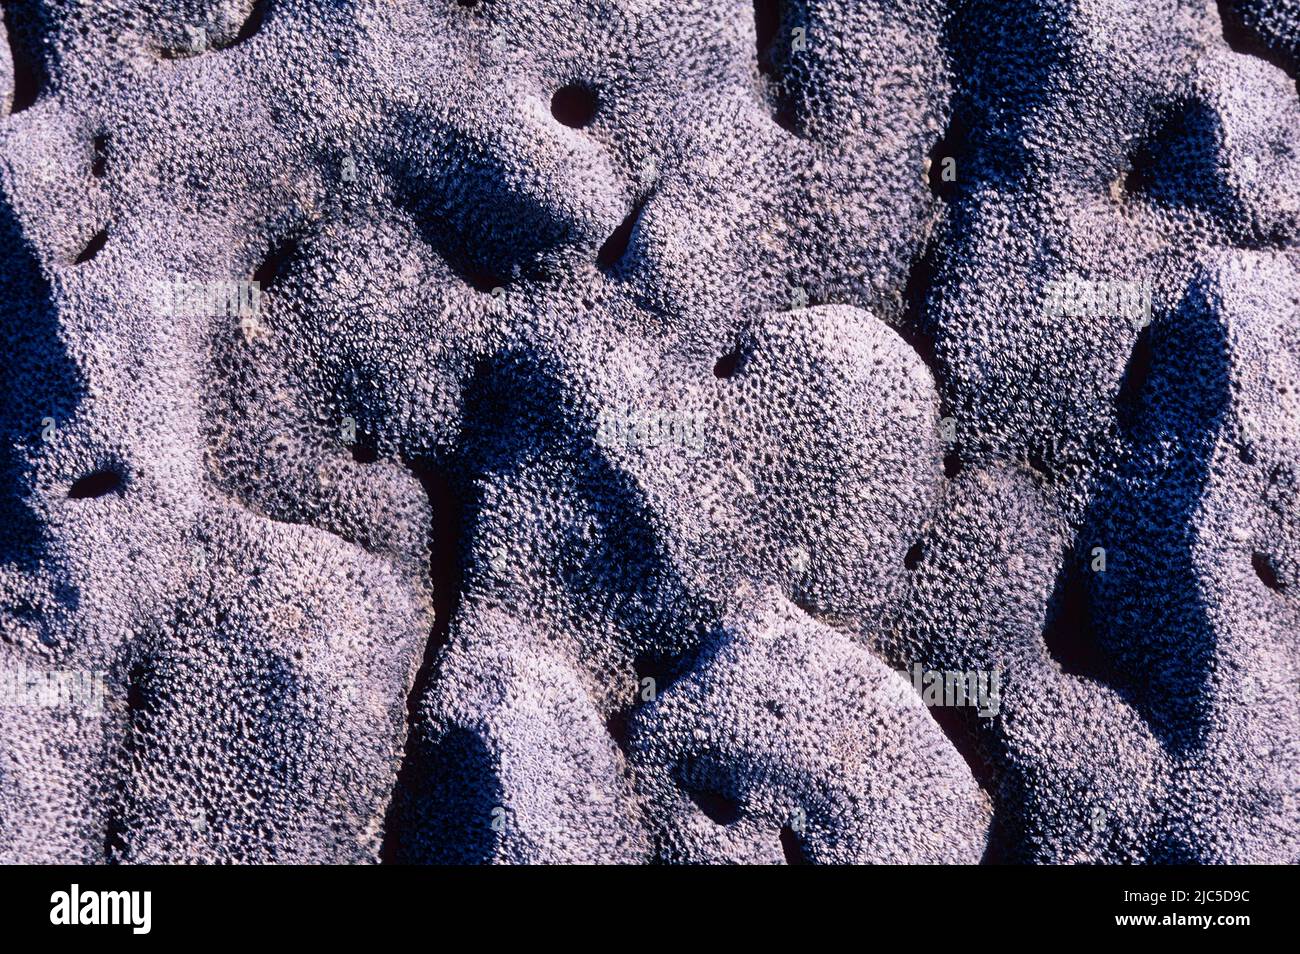 Korallenskelett, interior, freigelegt durch schnelle Bodenerhöhung durch vulkanische Aktivität, Galápagos Foto de stock